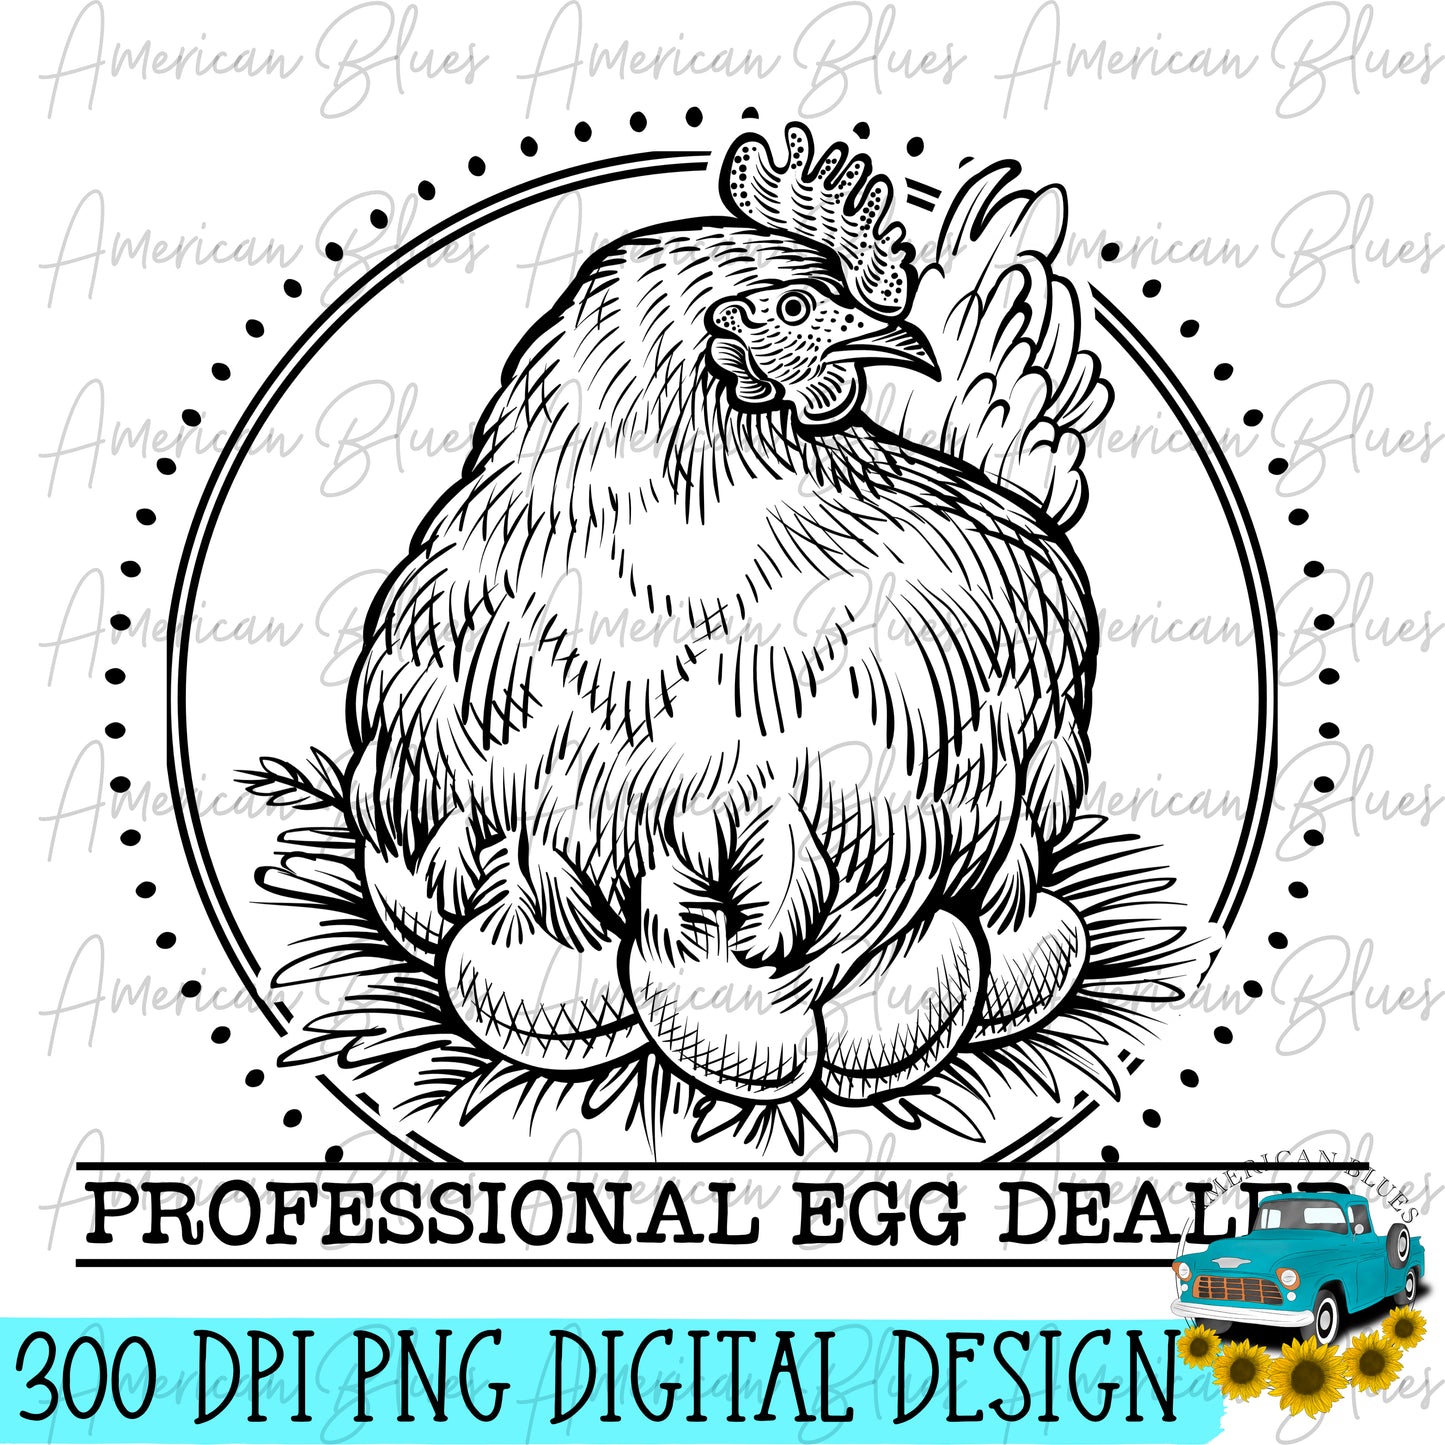 Professional Egg Dealer- single color hen black & white version included